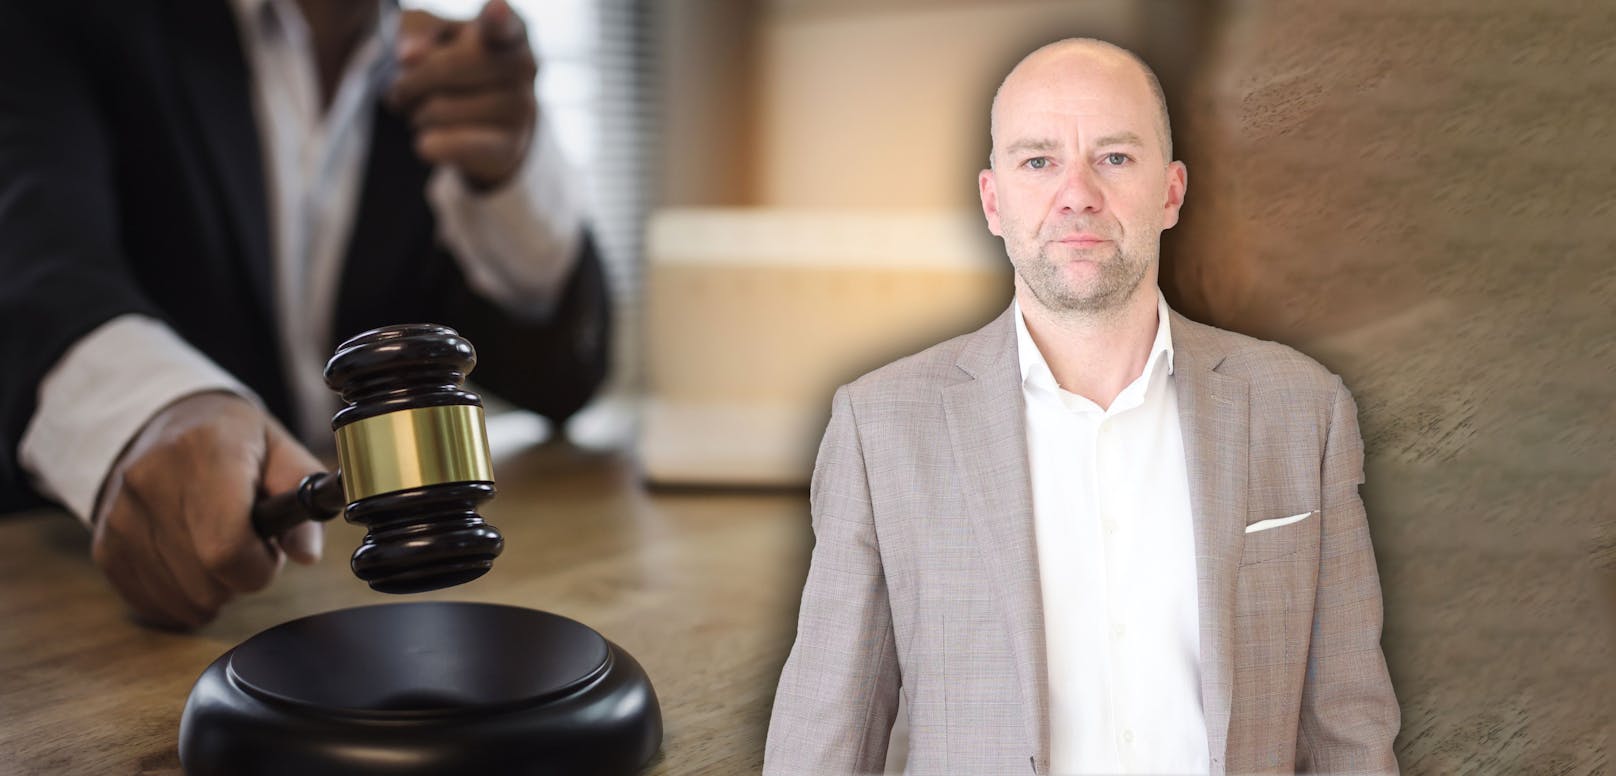 Anwalt Andreas Strobl verteidigte die Angeklagte und erkämpfte ein mildes Urteil im skurrilen Prozess.